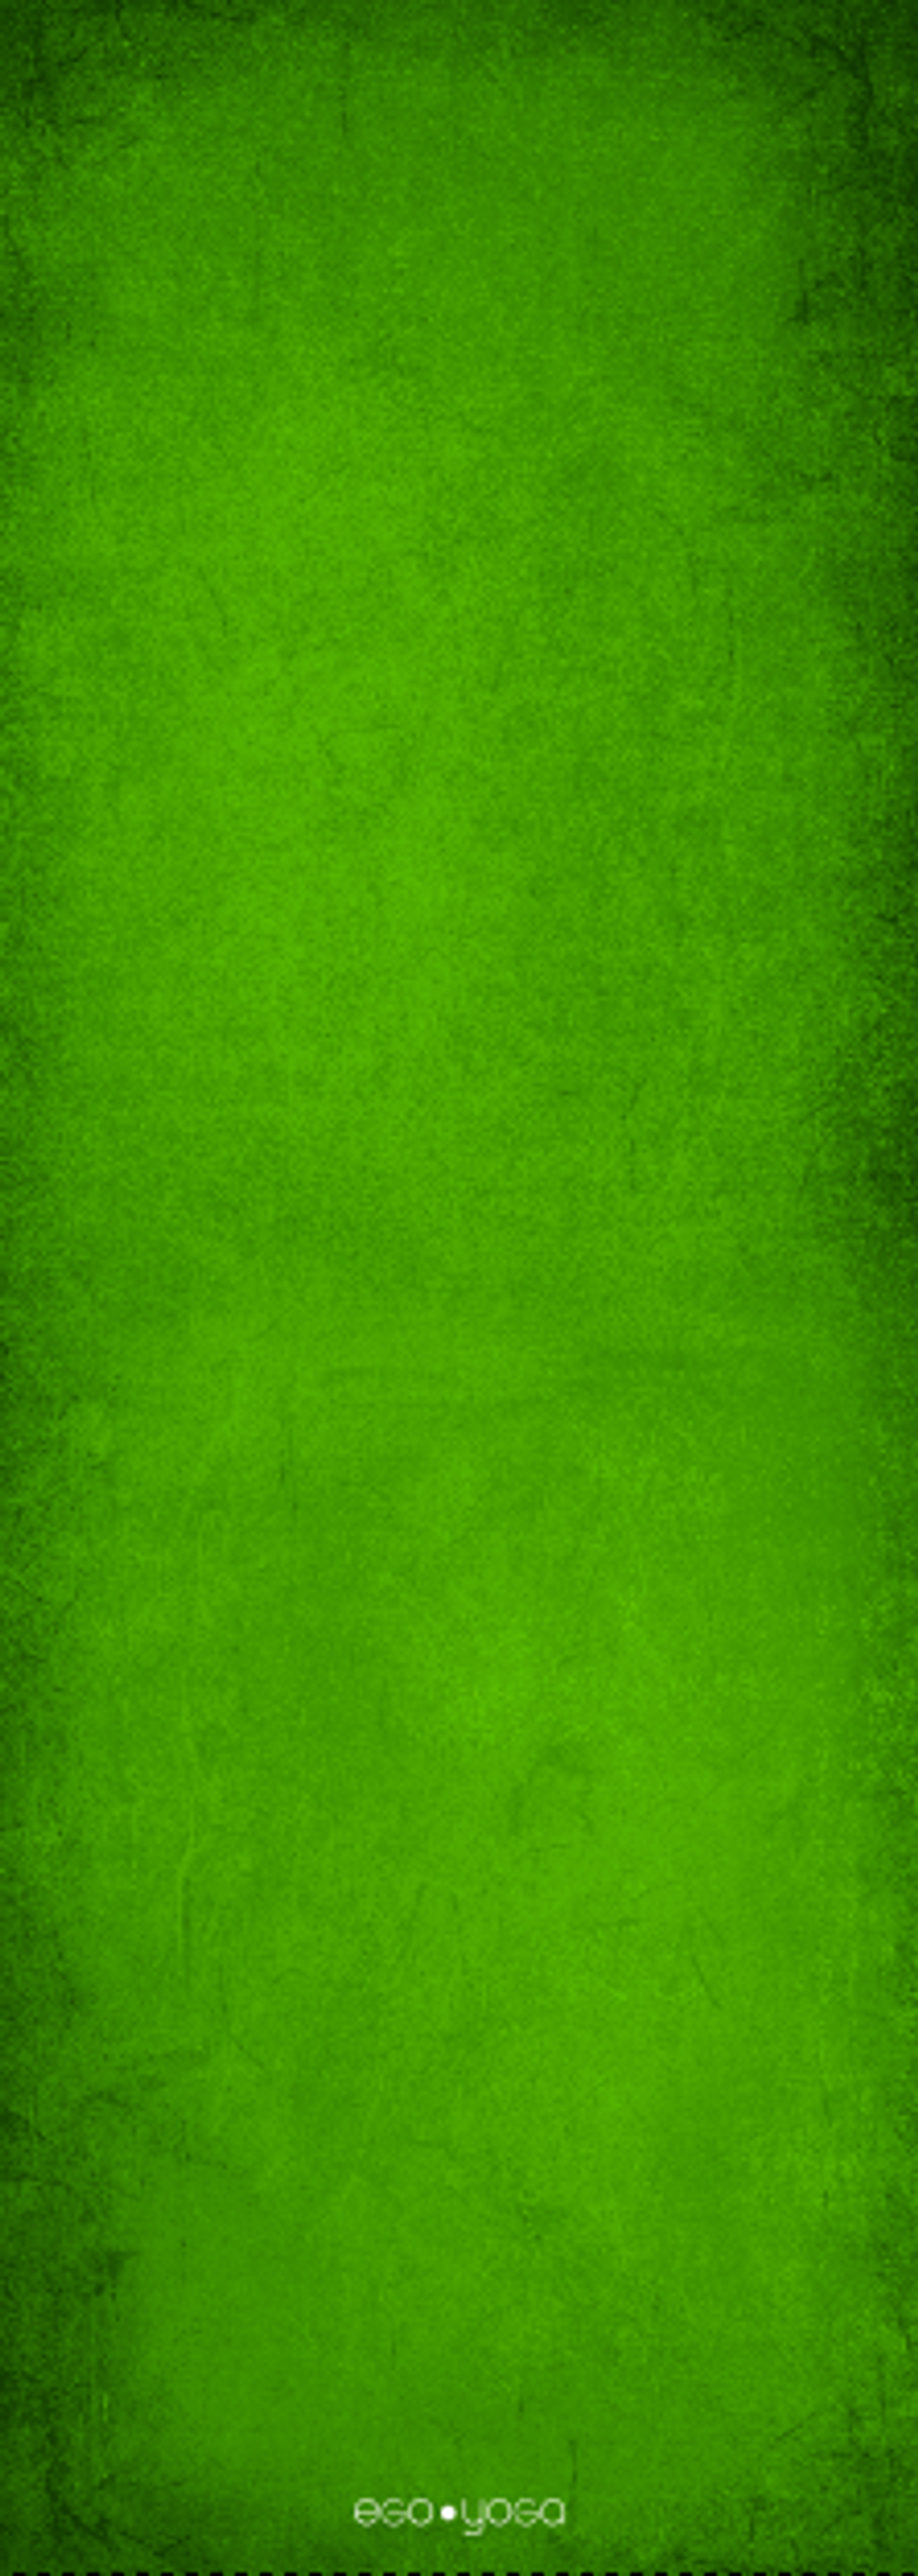 Коврик Green из микрофибры и каучука 183*66*0,3 см